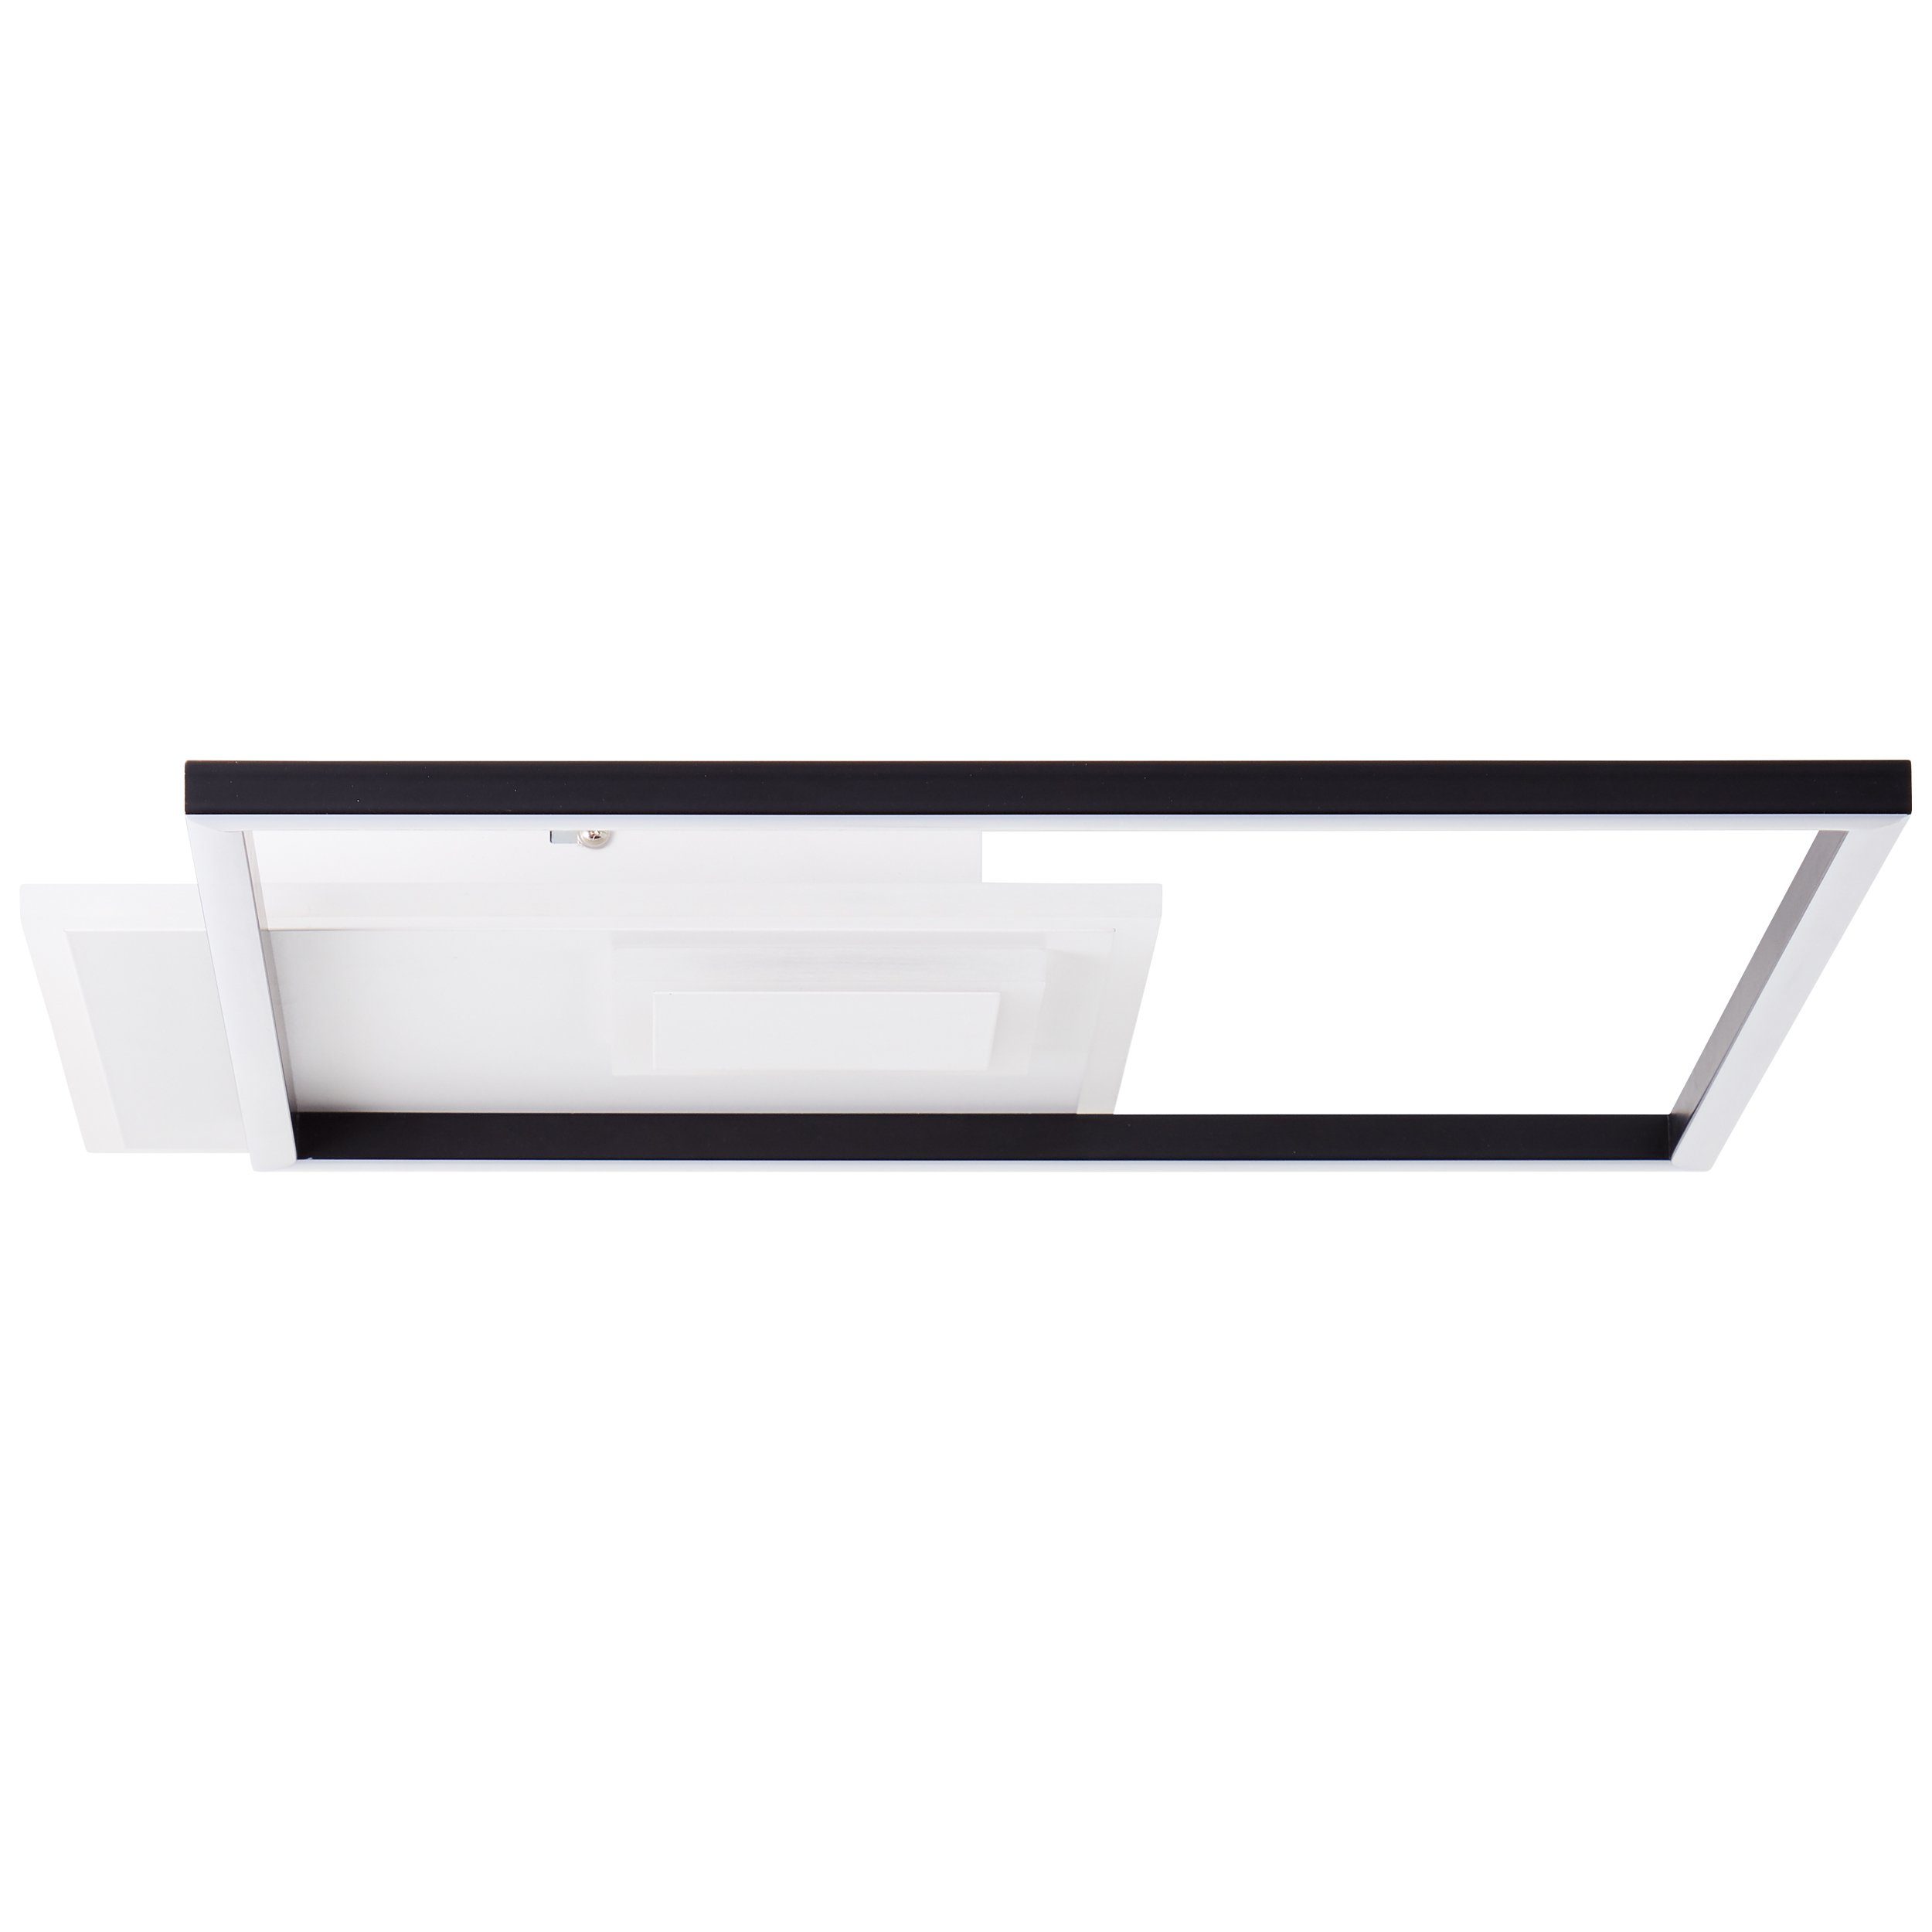 Iorgo Deckenaufbau-Paneel 44x44cm Iorgo, Metall/Kunststoff LED Aufbauleuchte schwarz/weiß, Brilliant